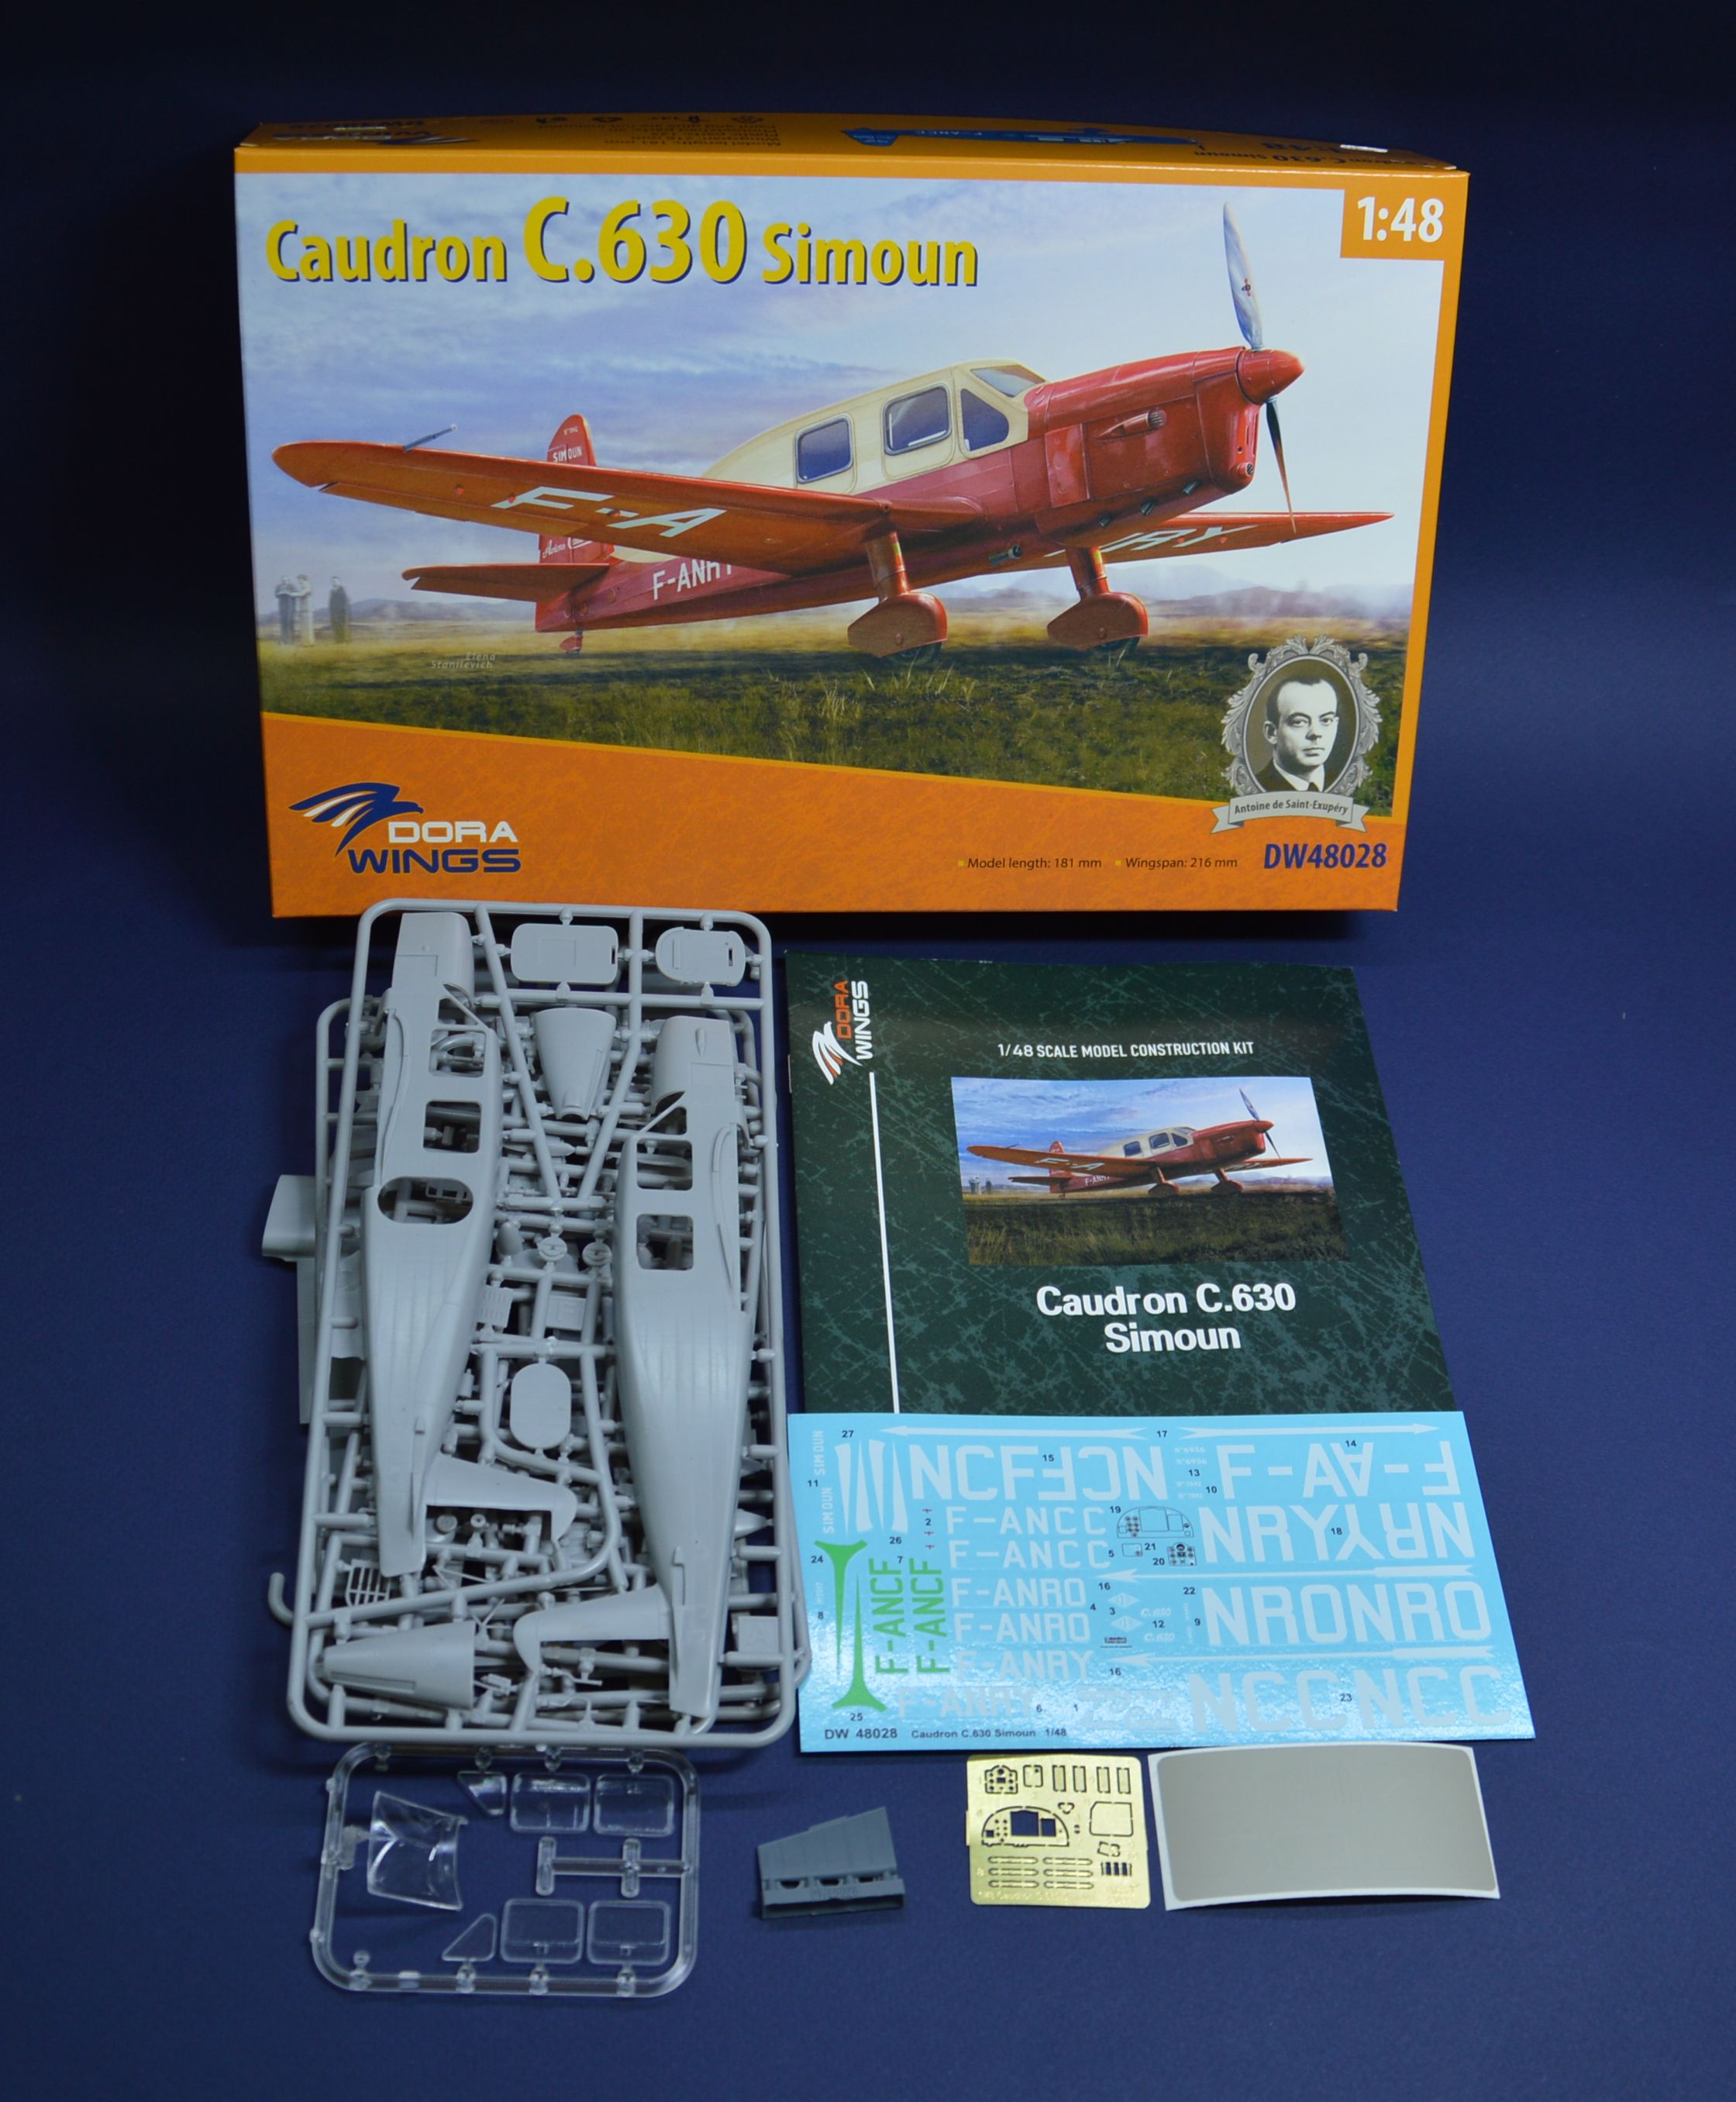 Caudron C.630 Simoun (DW48028). On sale.